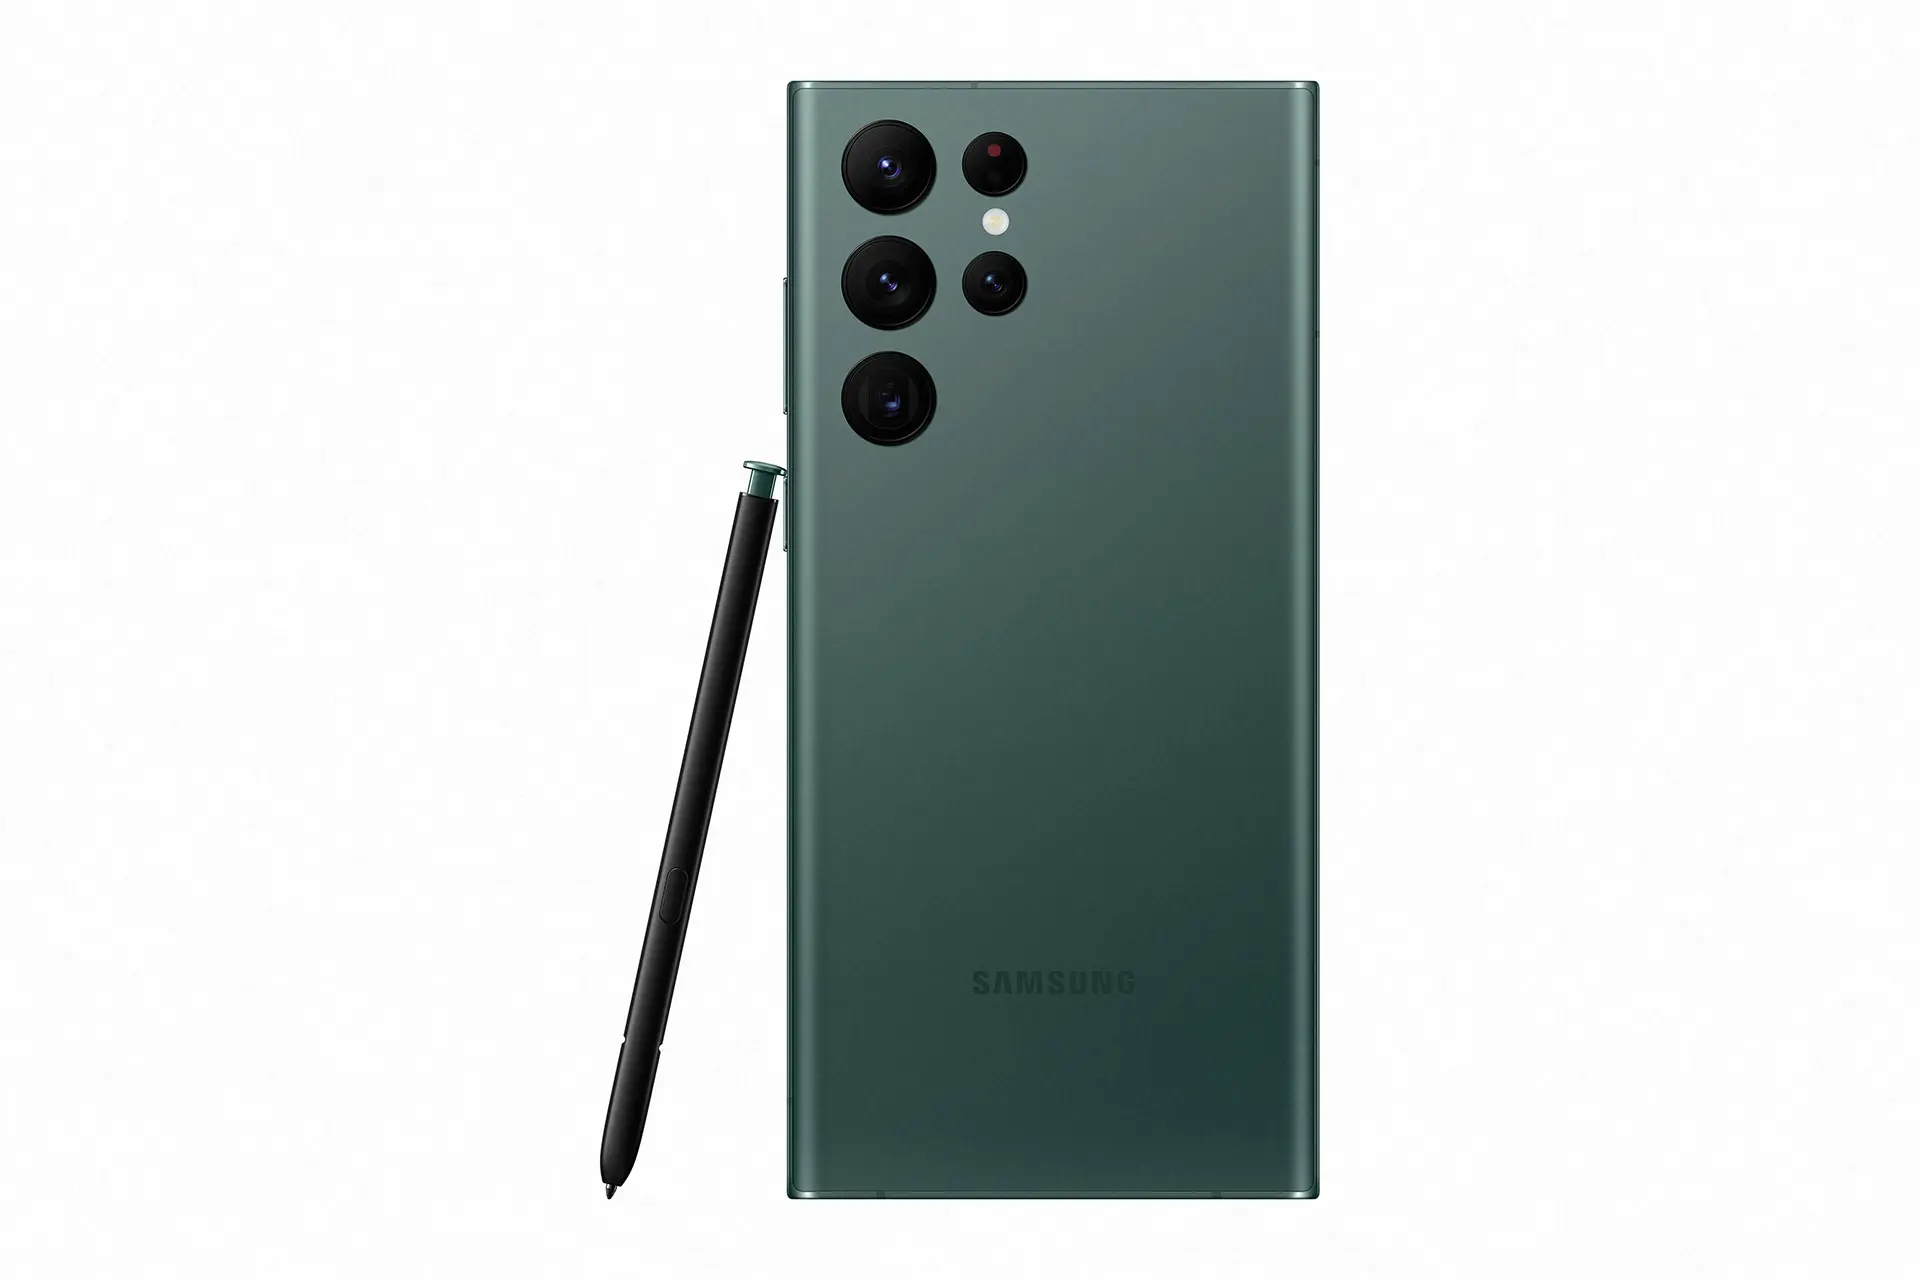 رنگ سبز گلکسی اس ۲۲ اولترا / Galaxy S22 Ultra با محوریت قلم و دوربین ها